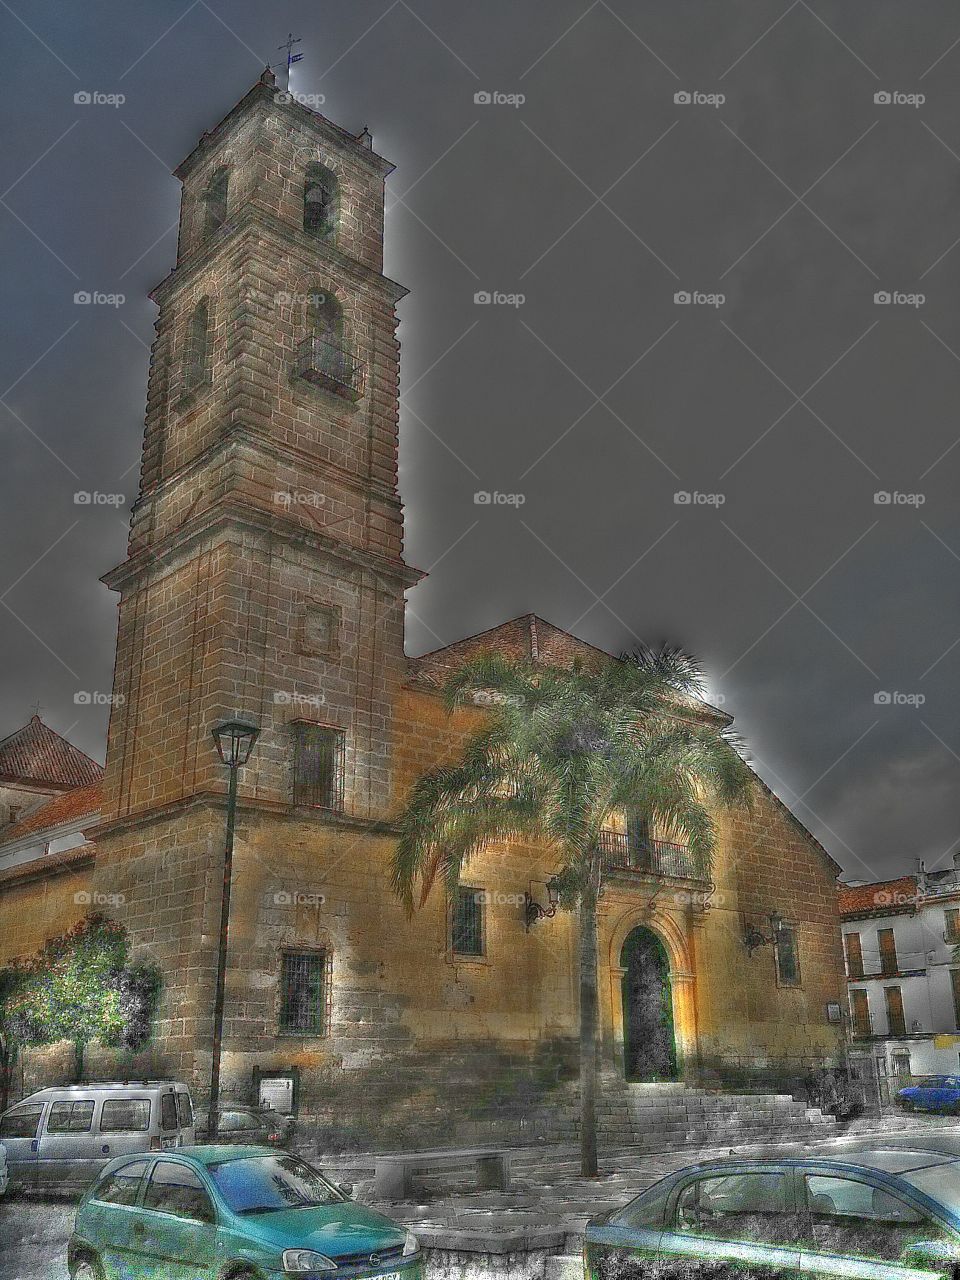 An old church in Alora, Spain